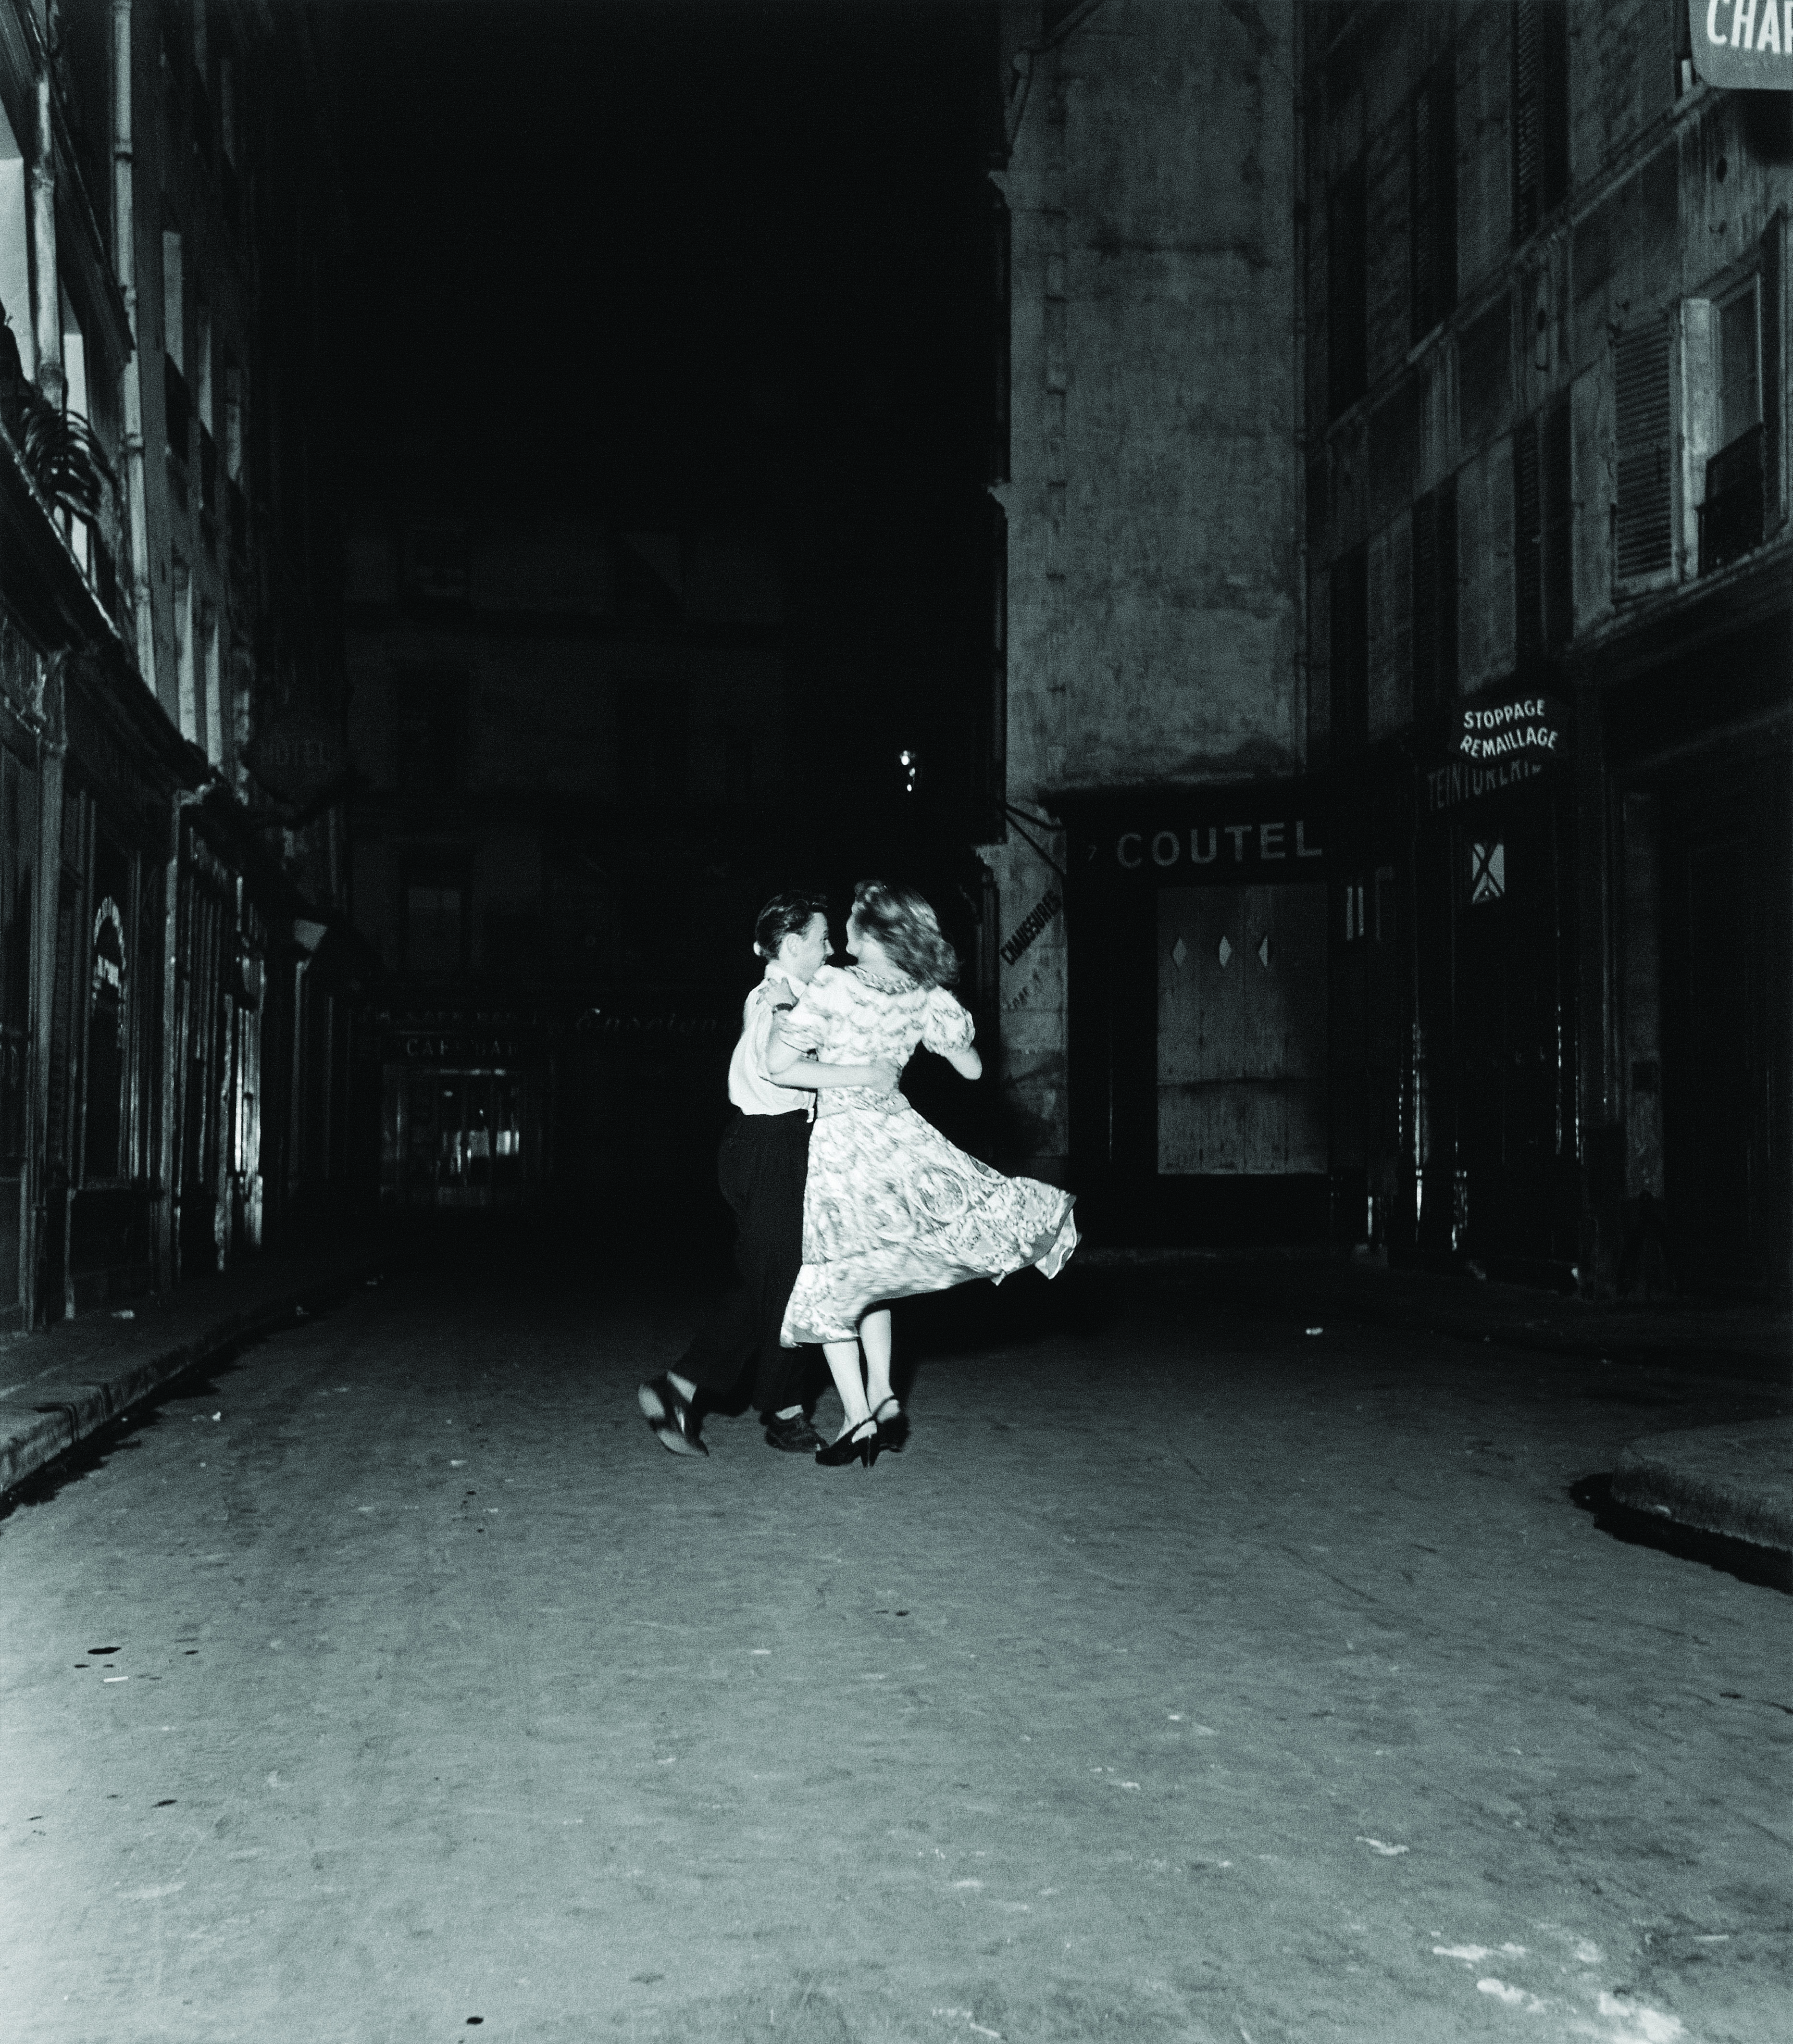 Robert Doisneau, La dernière valse du 14 juillet, Paris, 1949